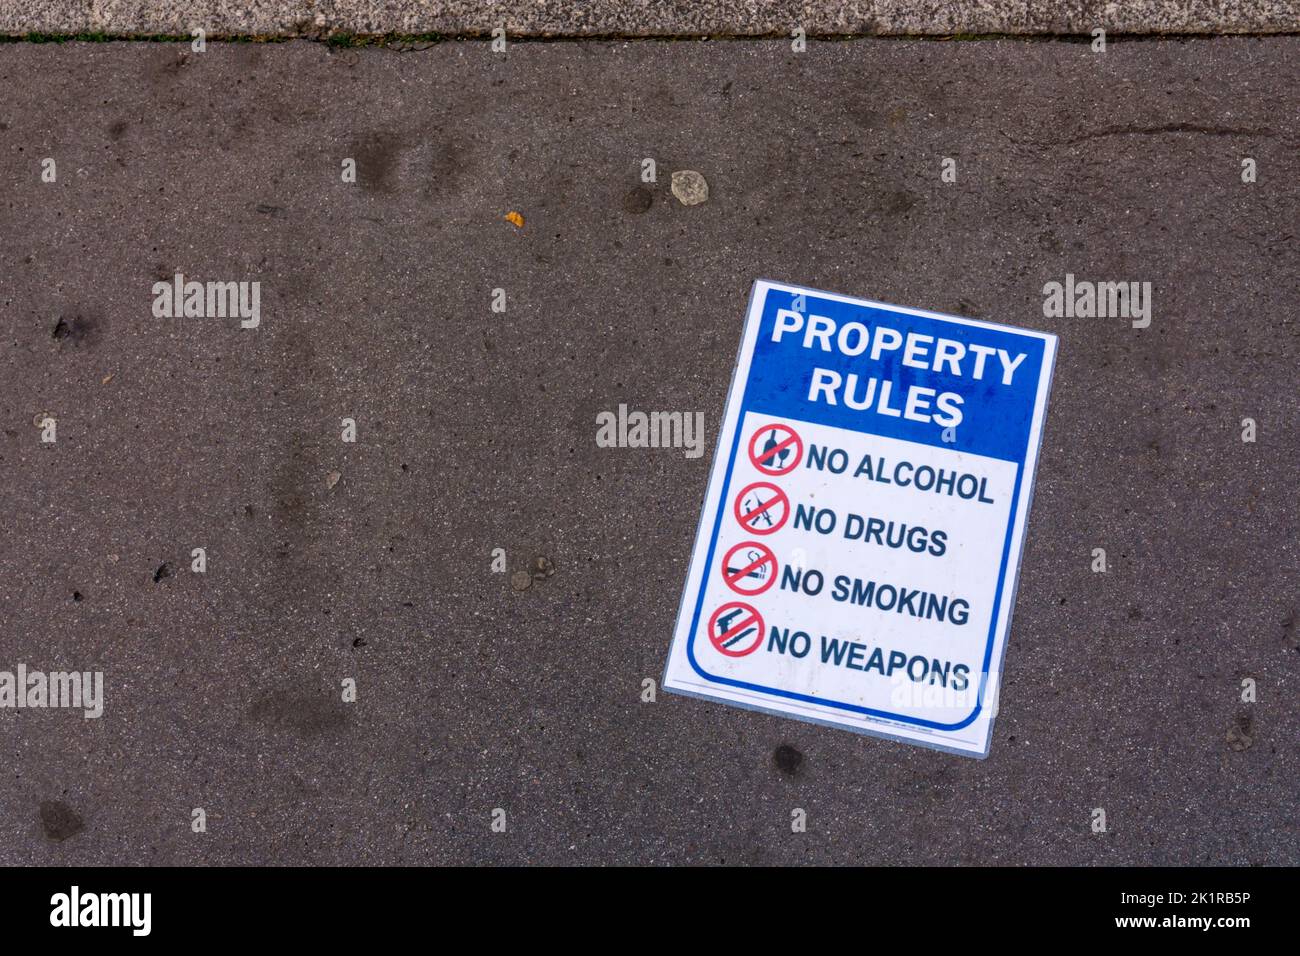 Un cartel en una calle de Londres enumera las Reglas de Propiedad como No Alcohol, No Drogas, No Fumar y No Armas. Foto de stock